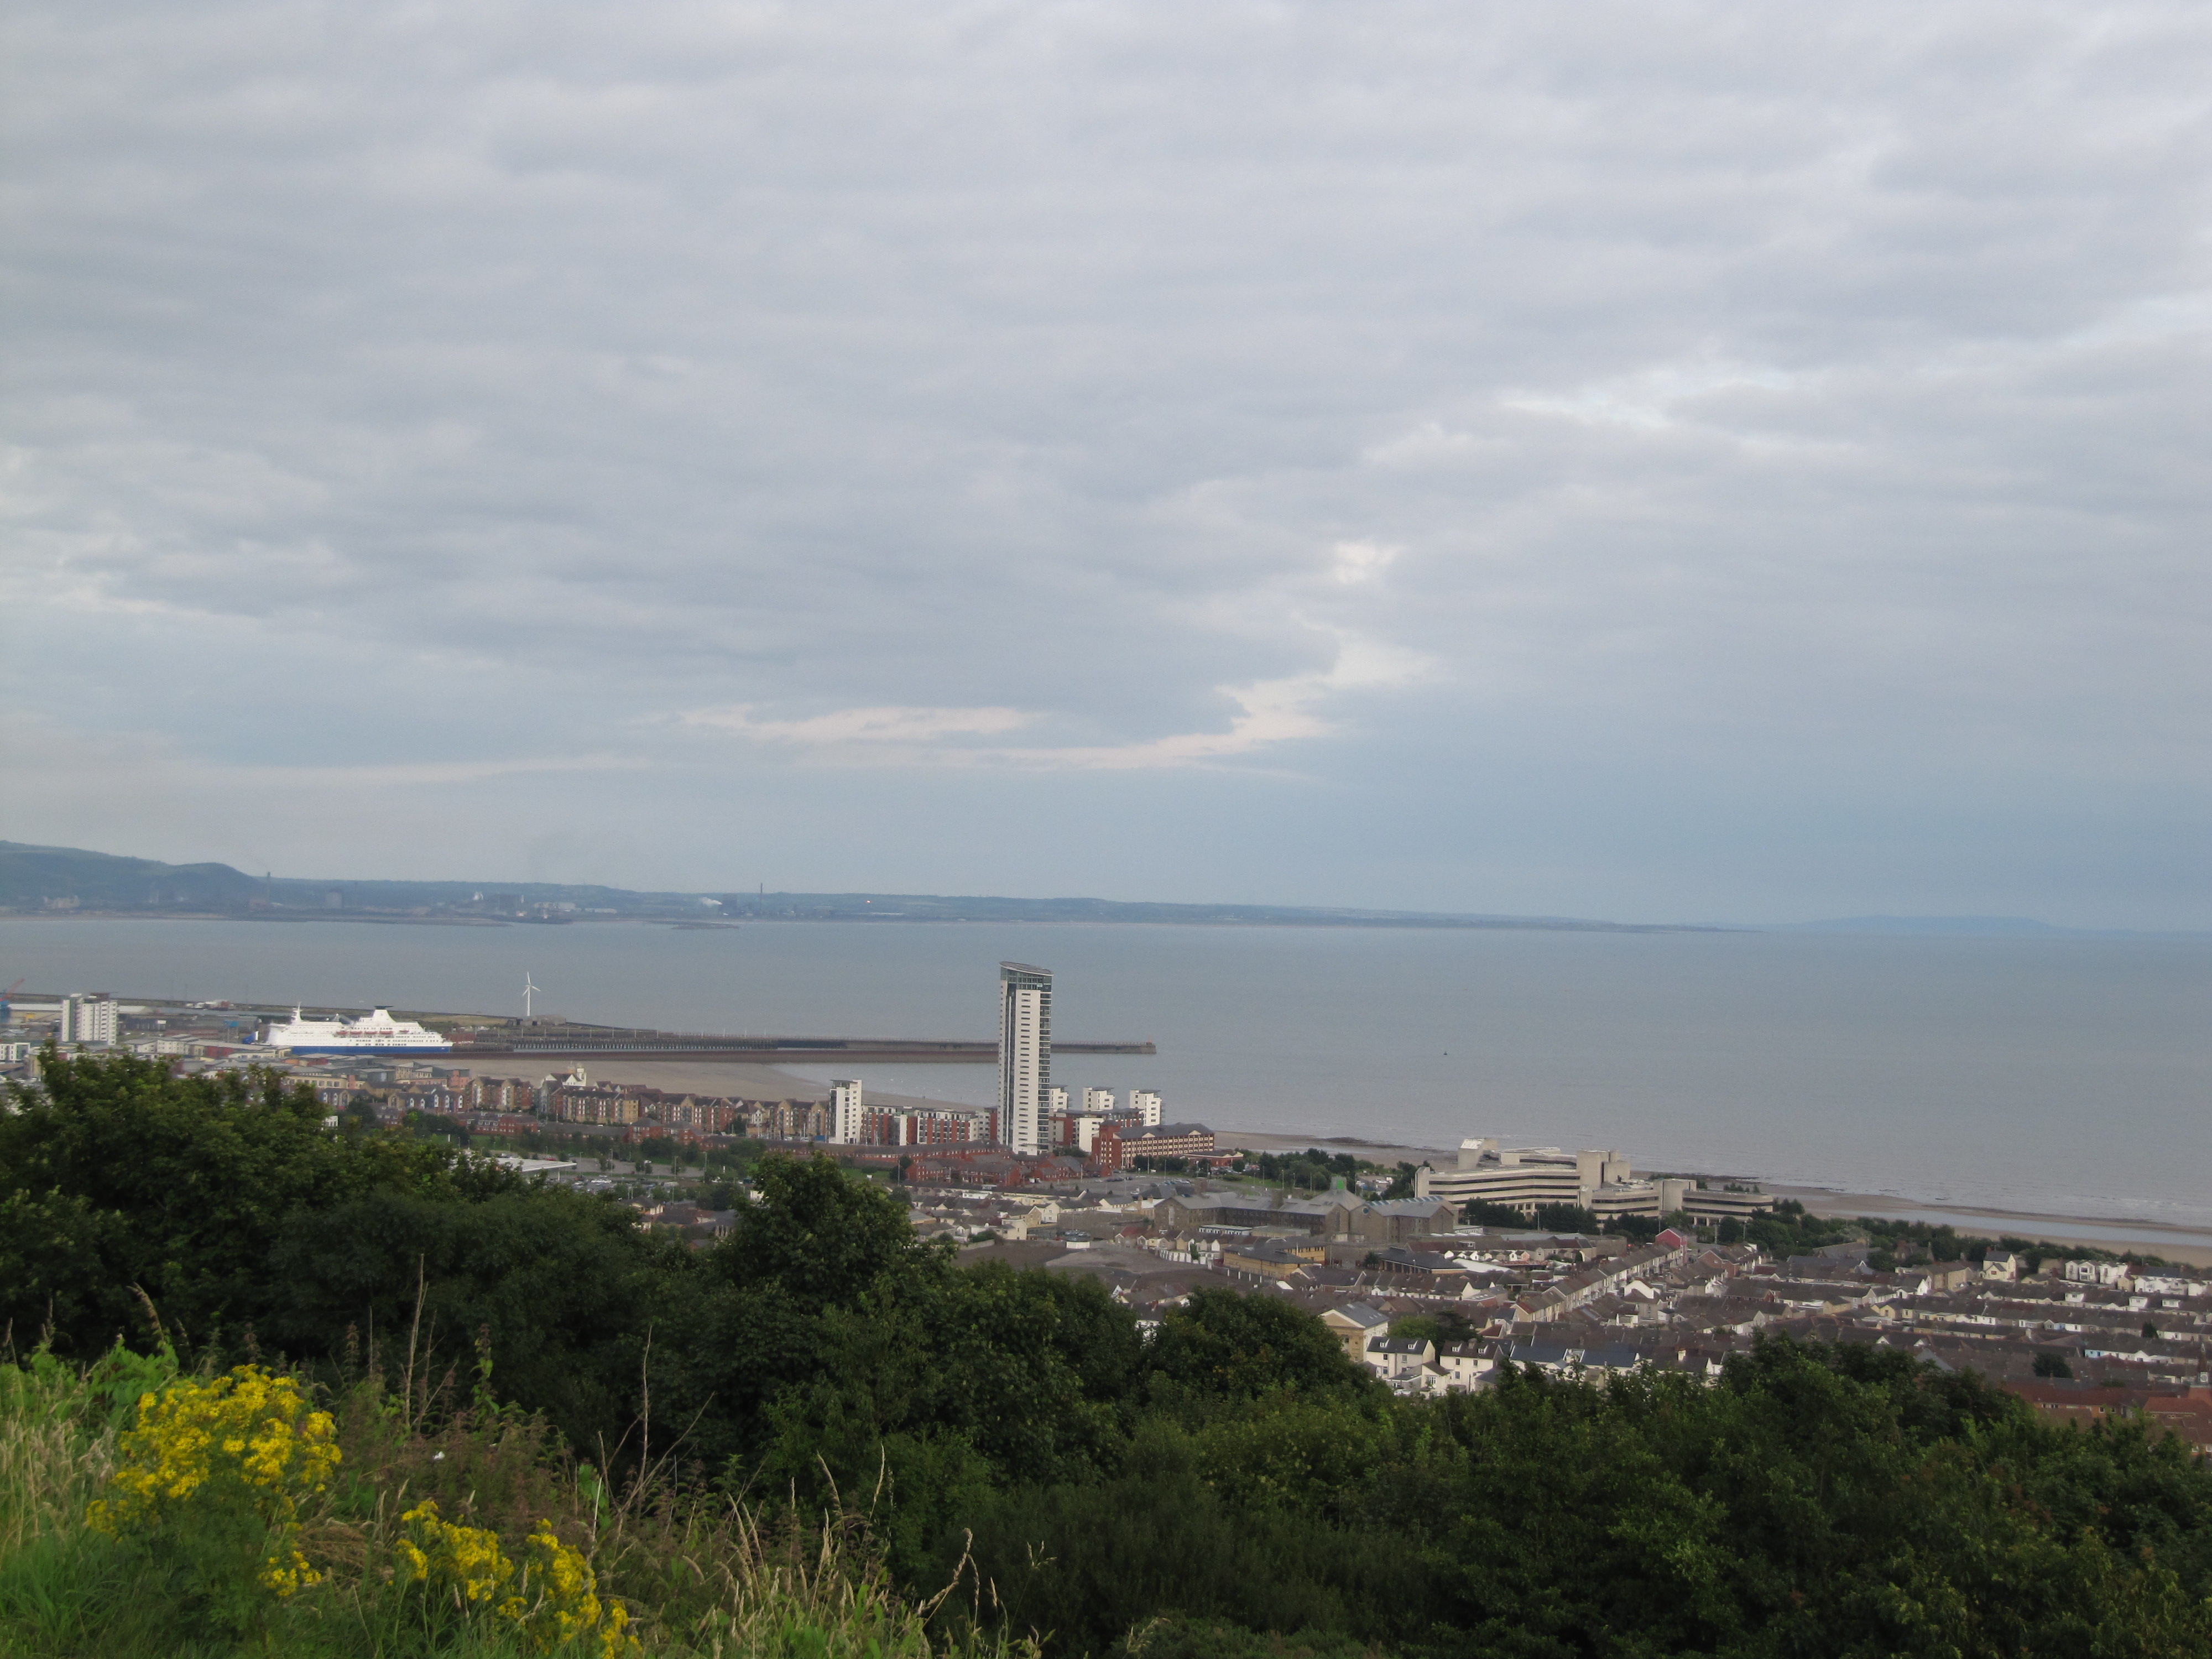 General view of Swansea